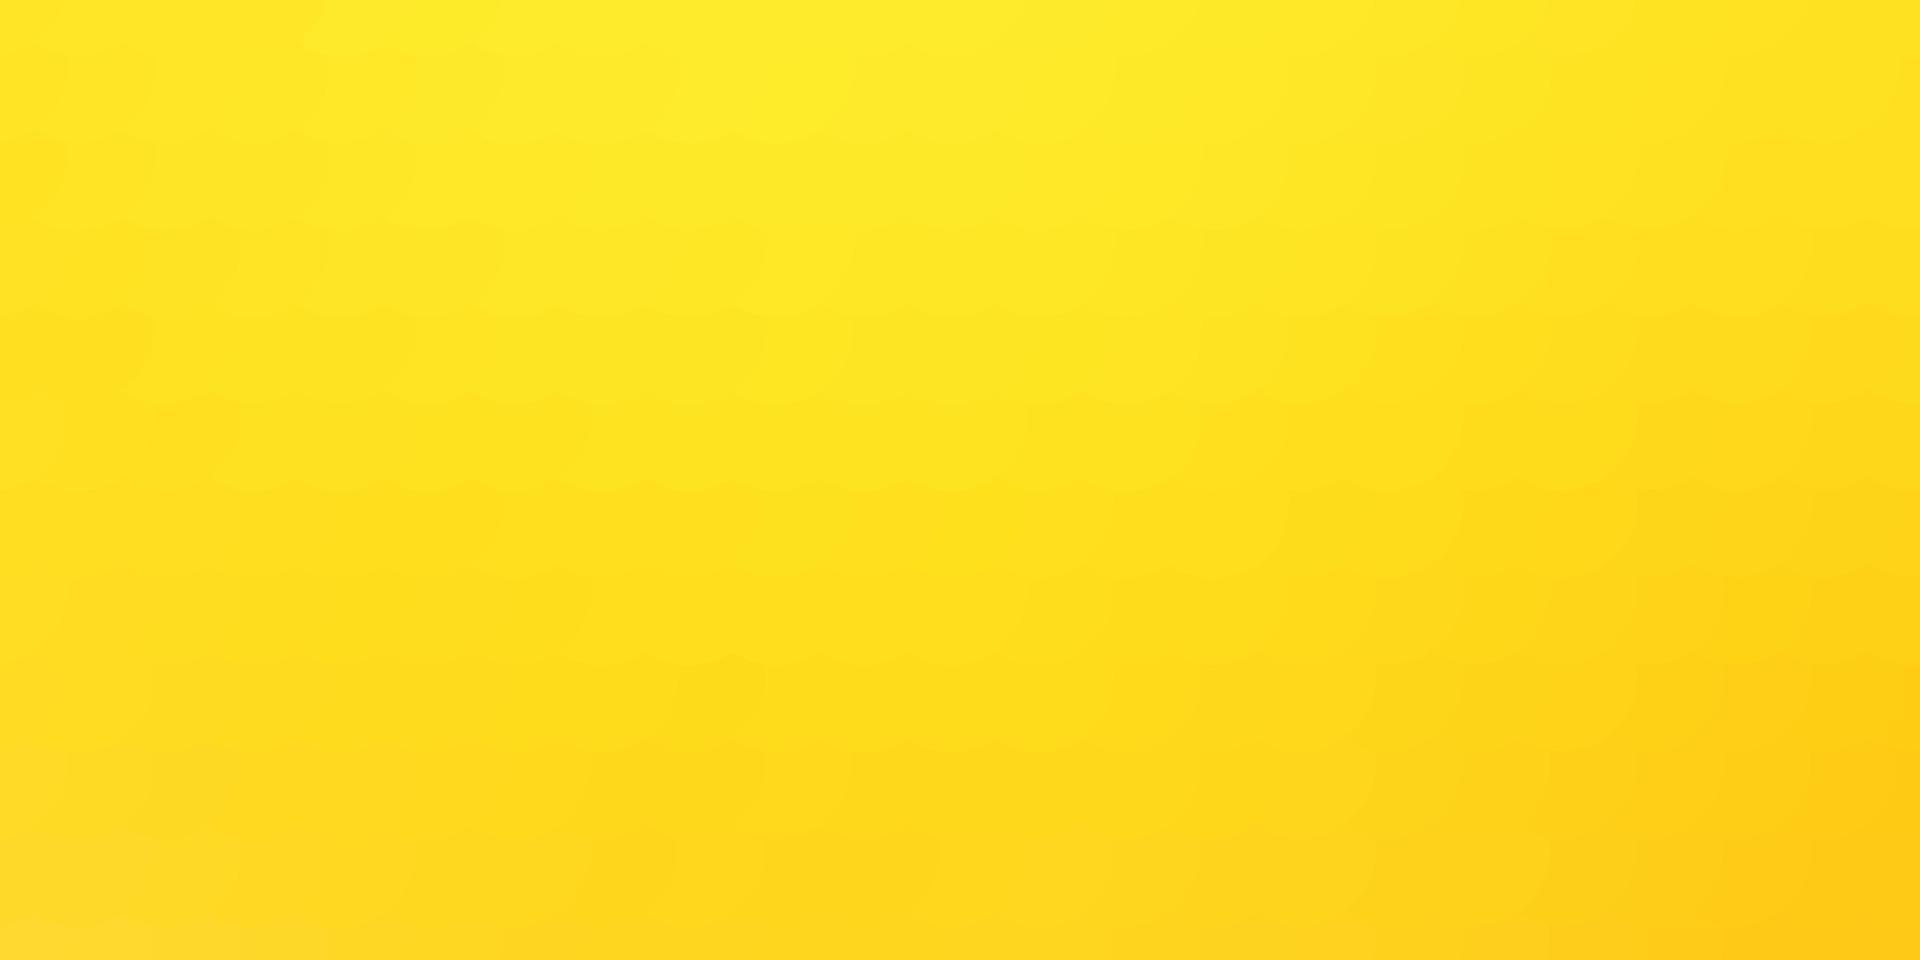 sfondo vettoriale giallo chiaro con macchie.